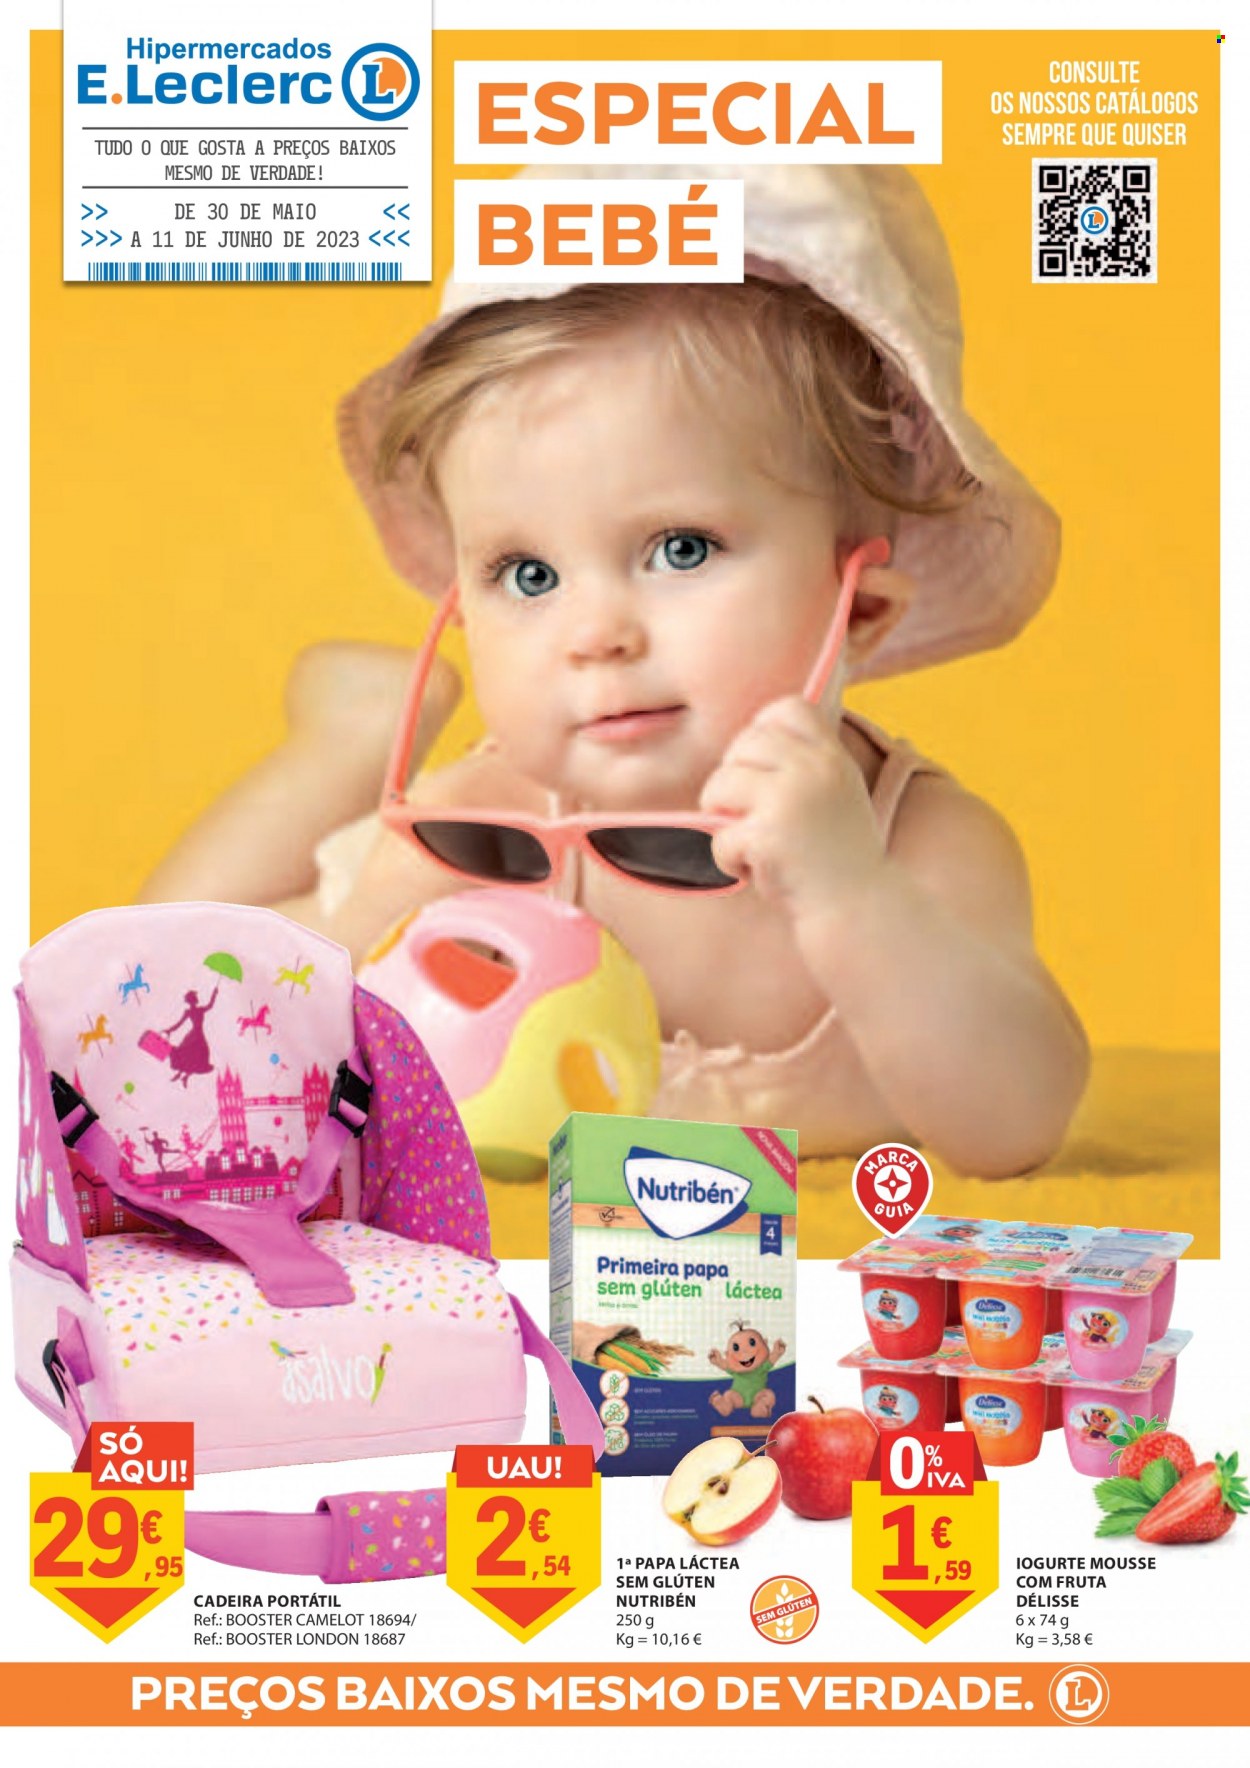 thumbnail - Folheto E.Leclerc - 30.5.2023 - 11.6.2023 - Produtos em promoção - iogurte, cadeira. Página 1.